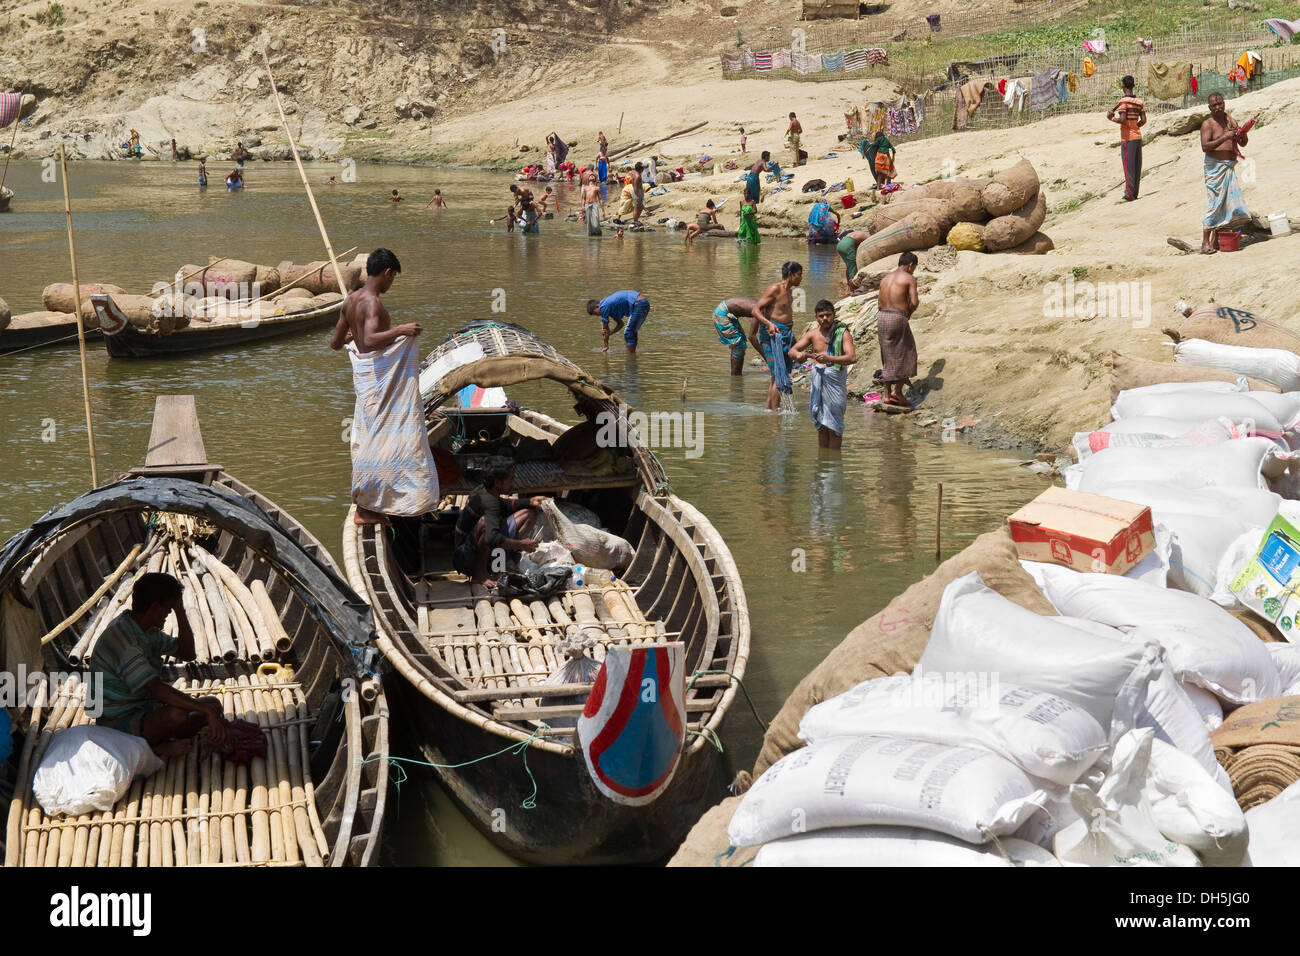 La vida bulliciosa Village en un embarcadero, boating conductores descansando, aldeanos y lavarse la ropa, Ruma Bazar Foto de stock